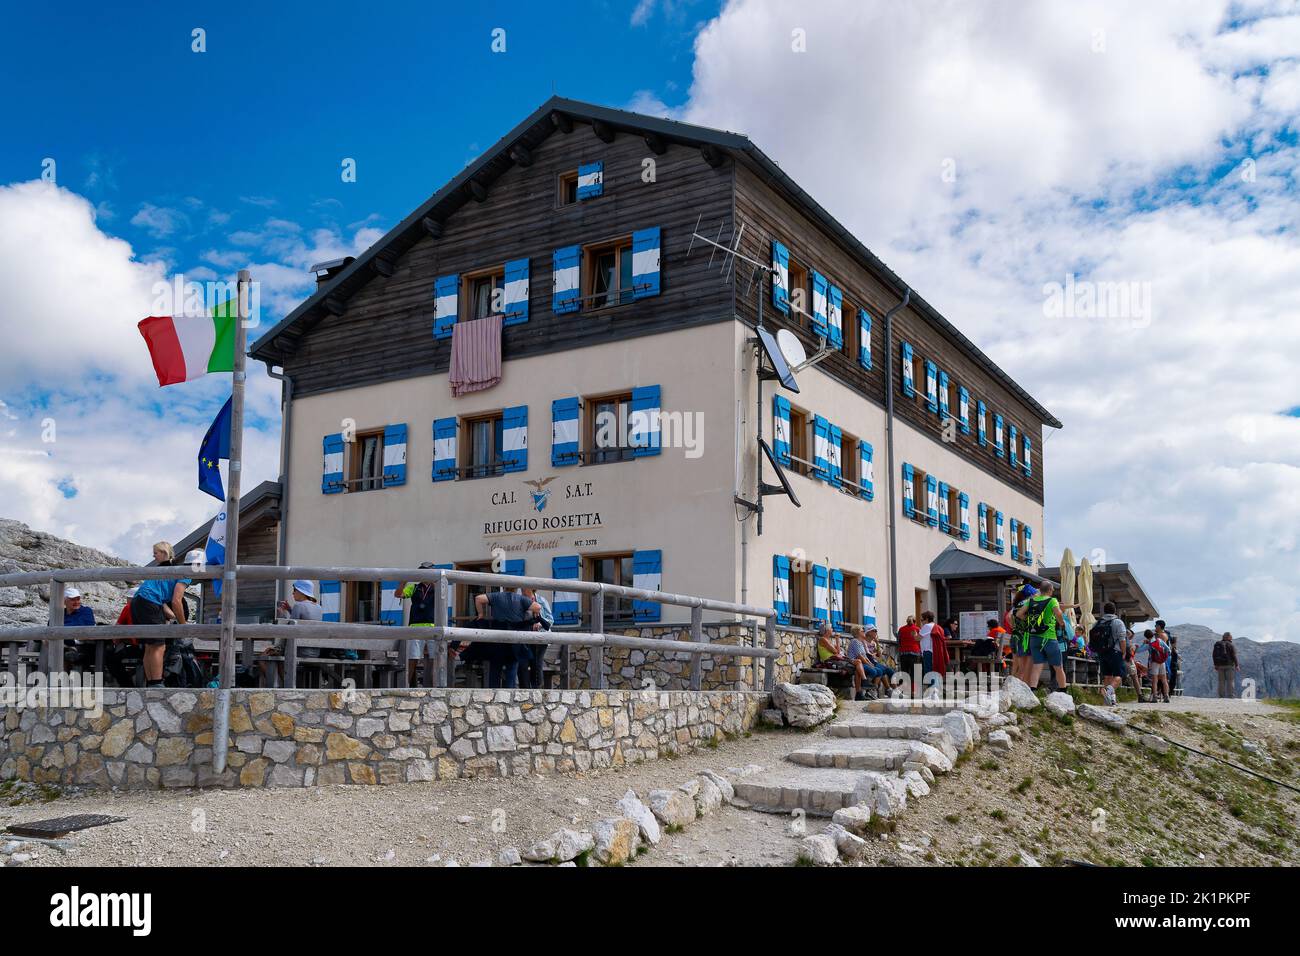 The Rifugio Rosetta in Pale di San Martino, Dolomites, Italy Stock Photo